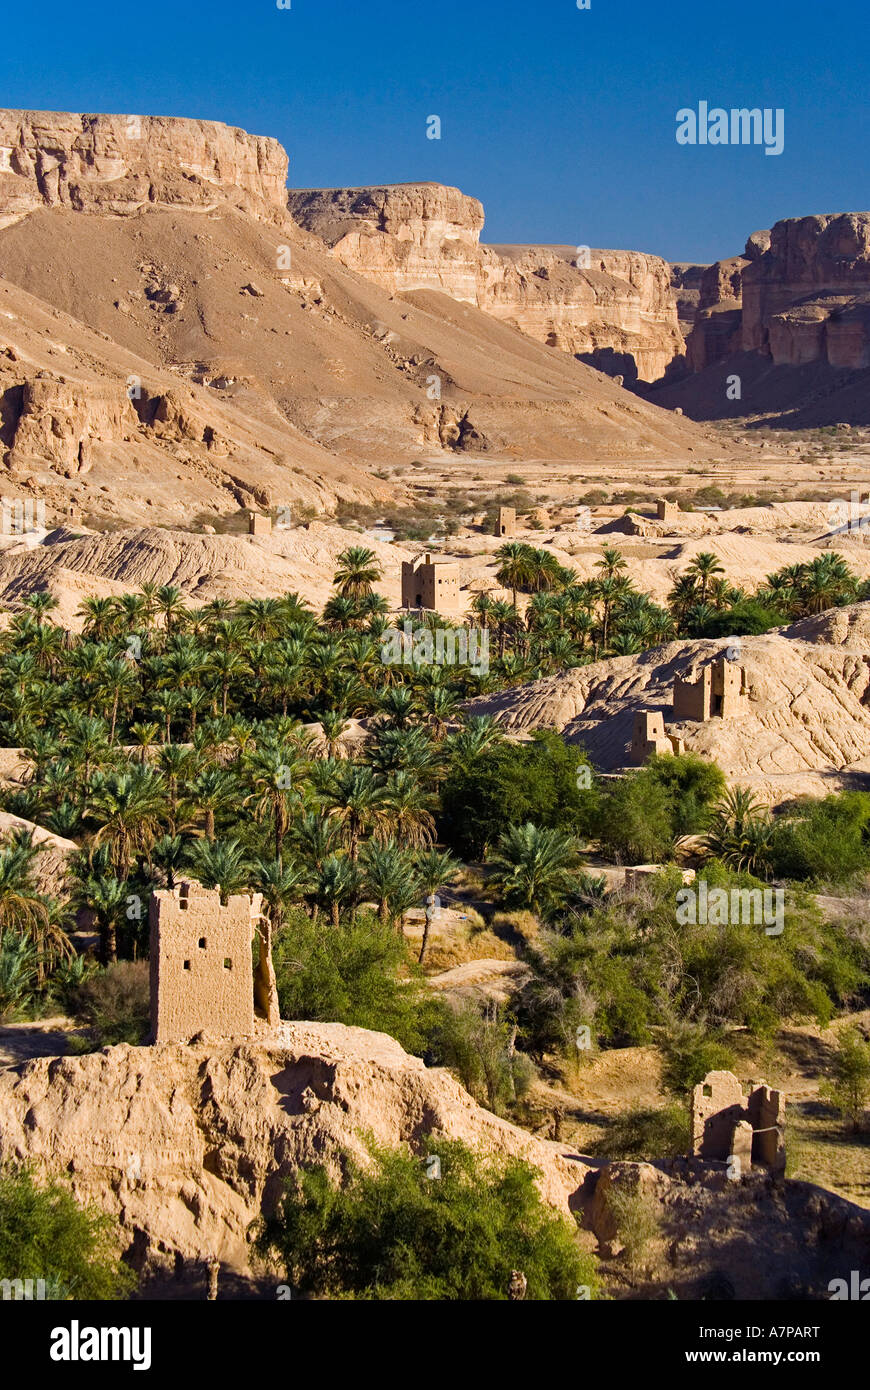 Al Hajjarin Village, Wadi Dawan (Wadi Do'an), Yemen Stock Photo